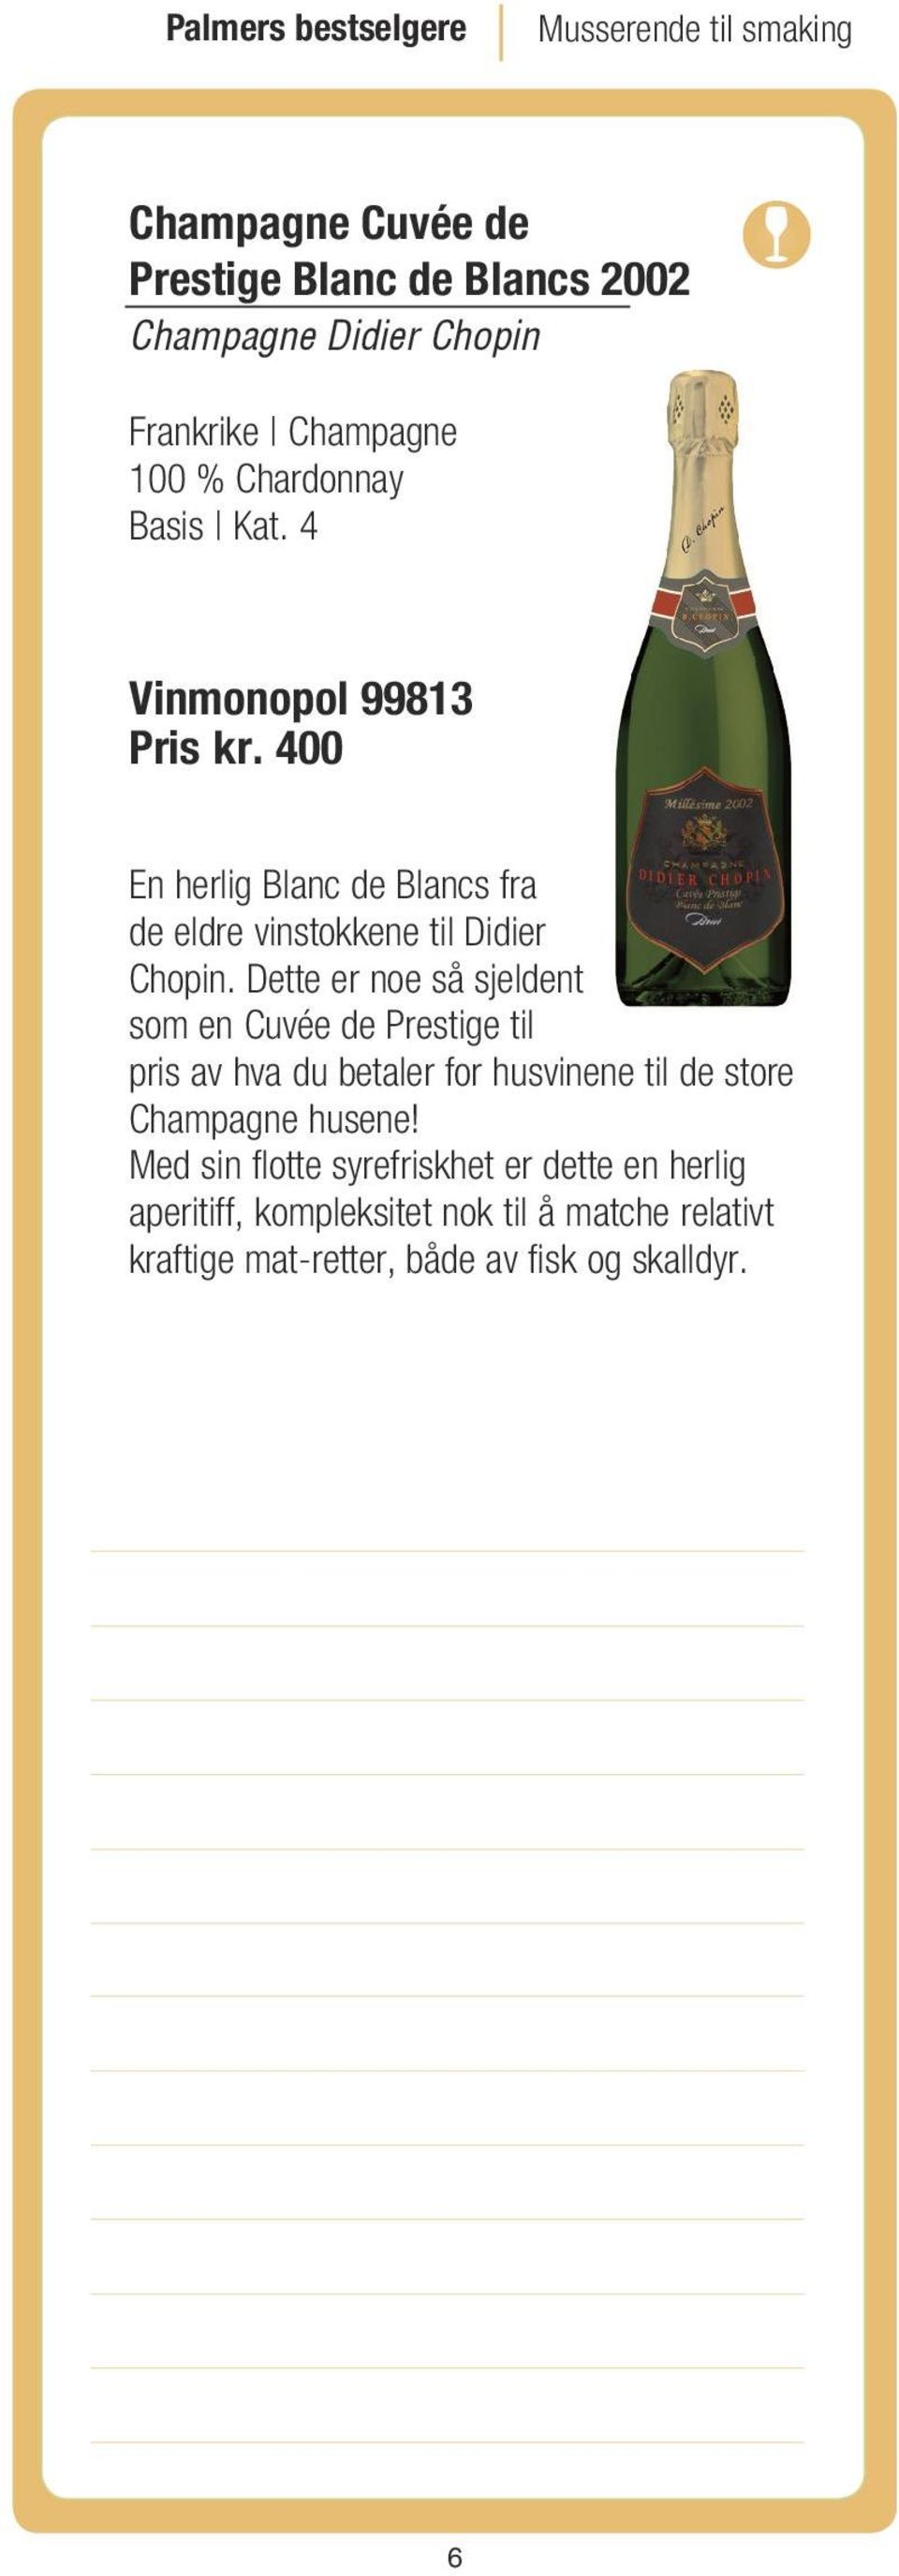 400 En herlig Blanc de Blancs fra de eldre vinstokkene til Didier Chopin.